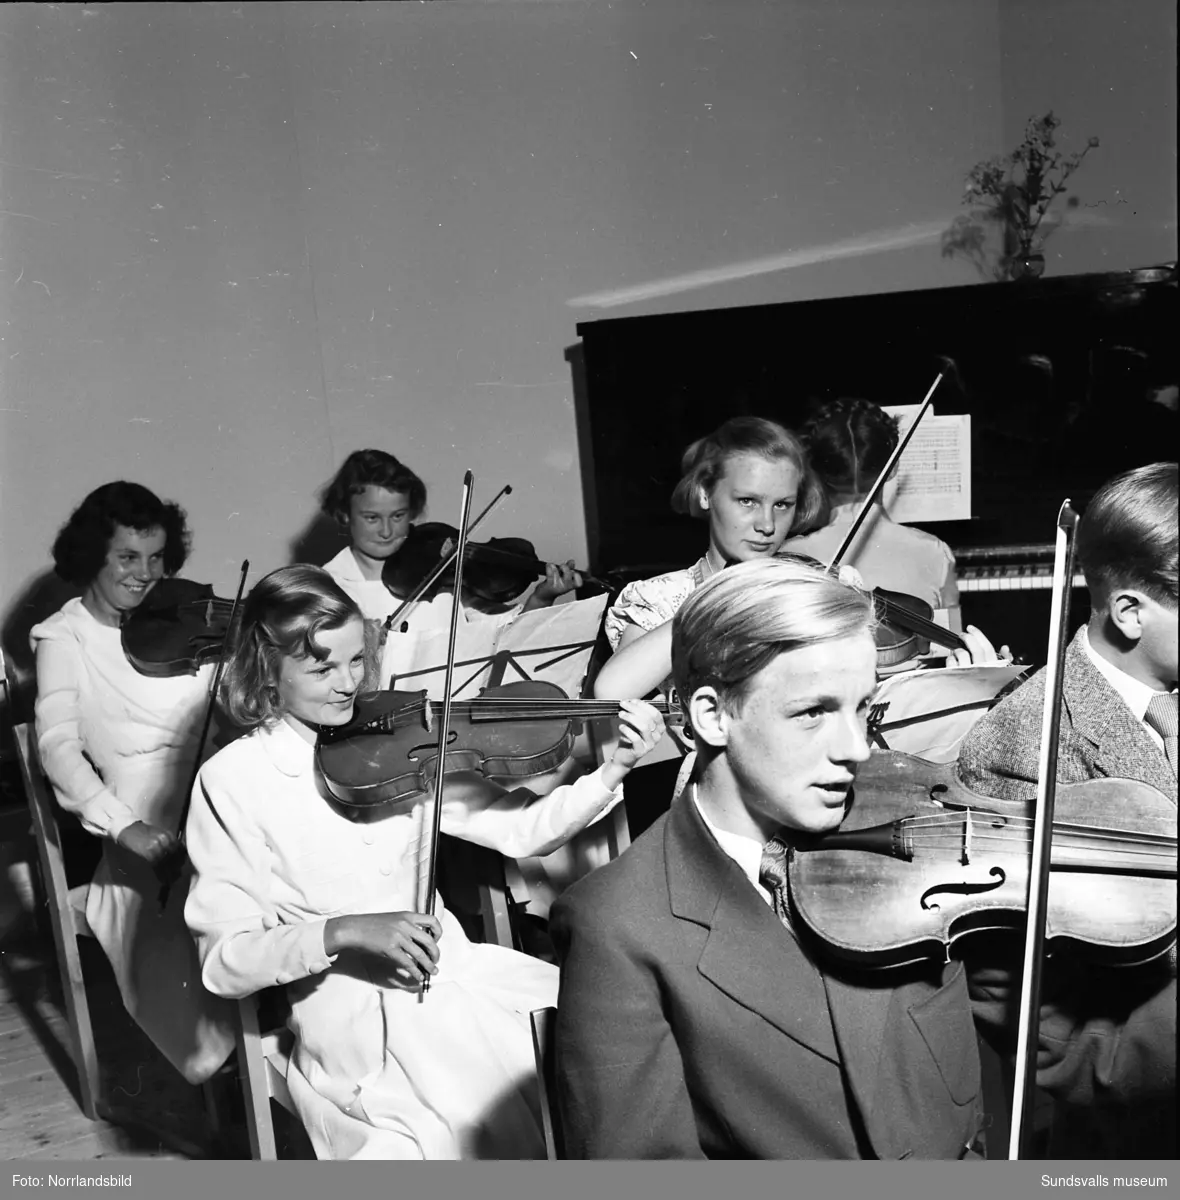 Invigning av Sköns församlingshus, sockenstuga, med underhållning av fiolspelande ungdomar. Byggnaden brann 1961.